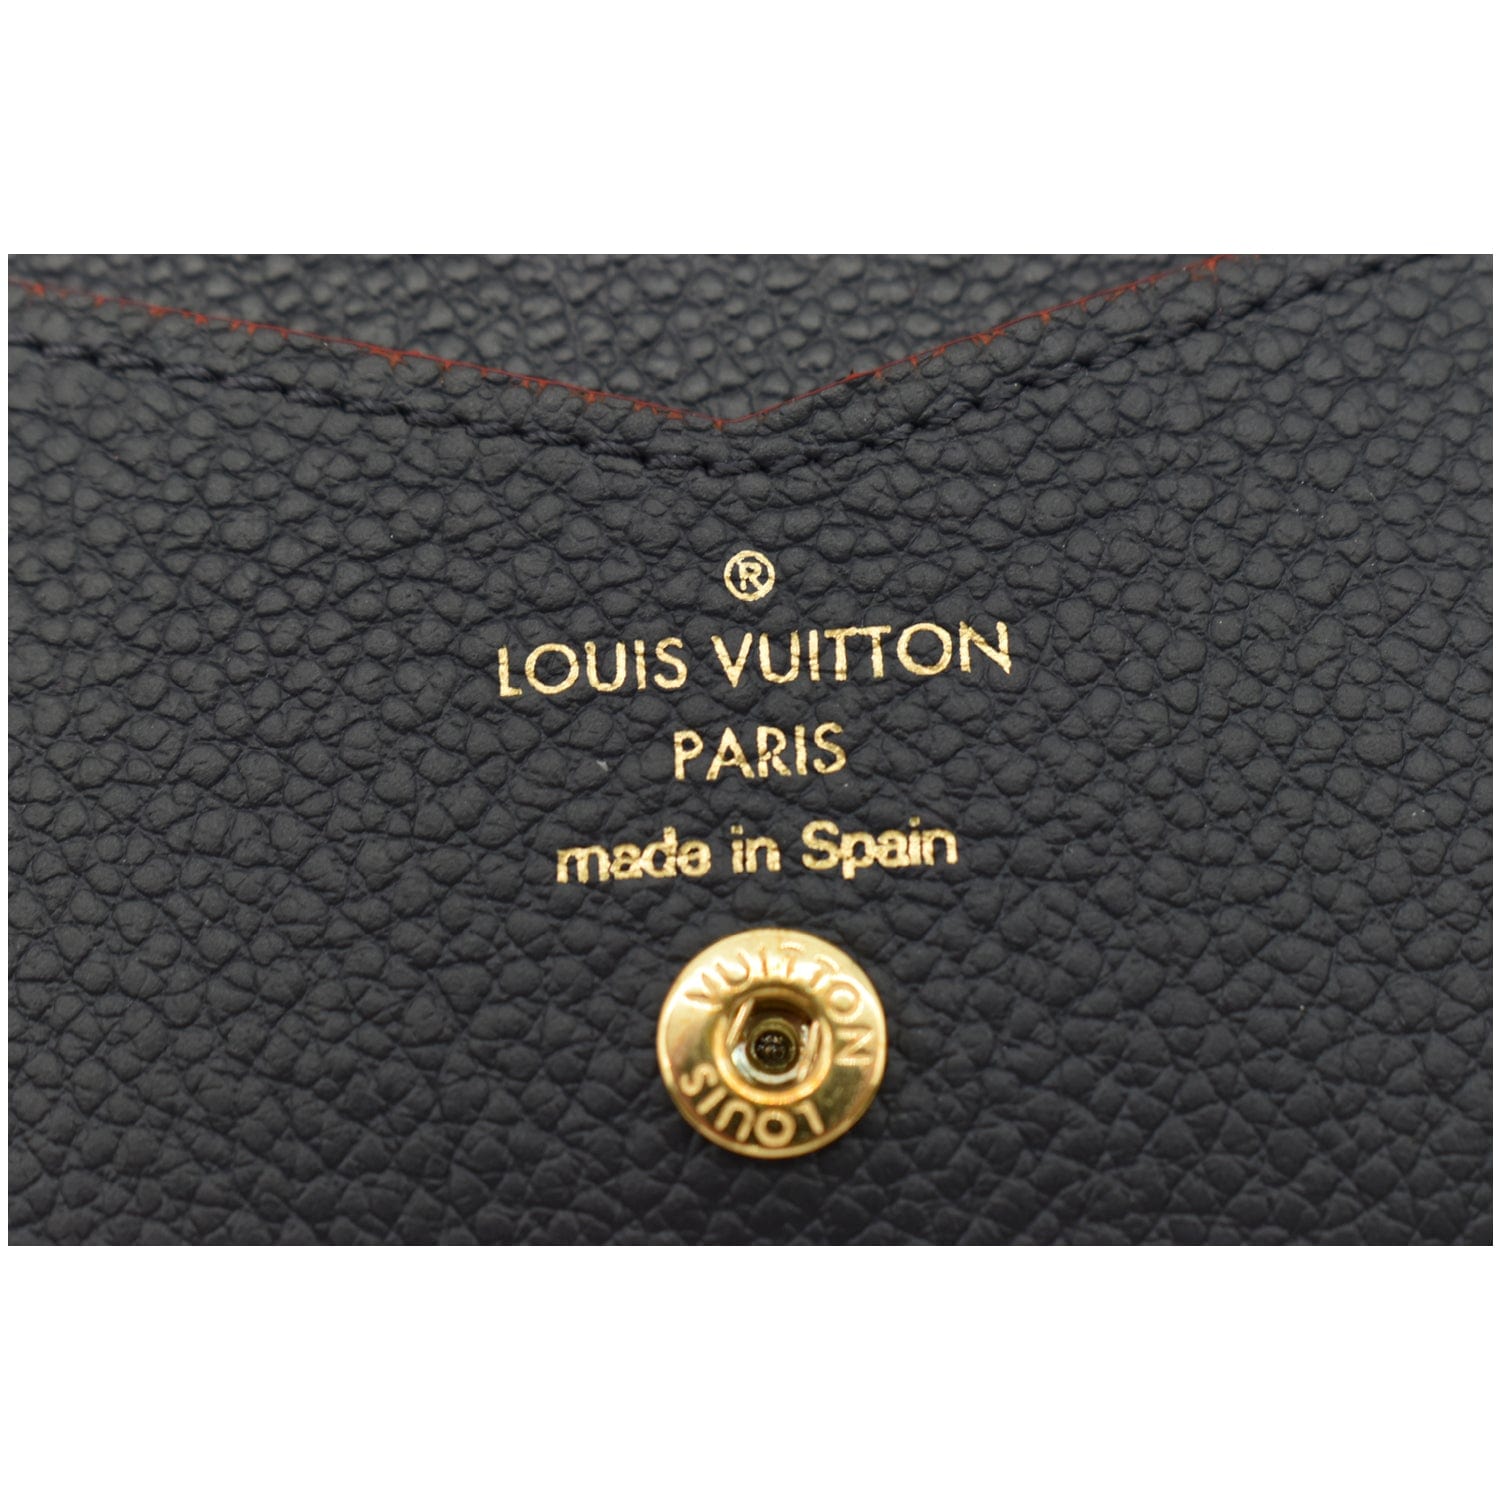 Louis Vuitton M63920 Zippy Long Wallet Portefeuille Clmence Amplant Marine  Rouge